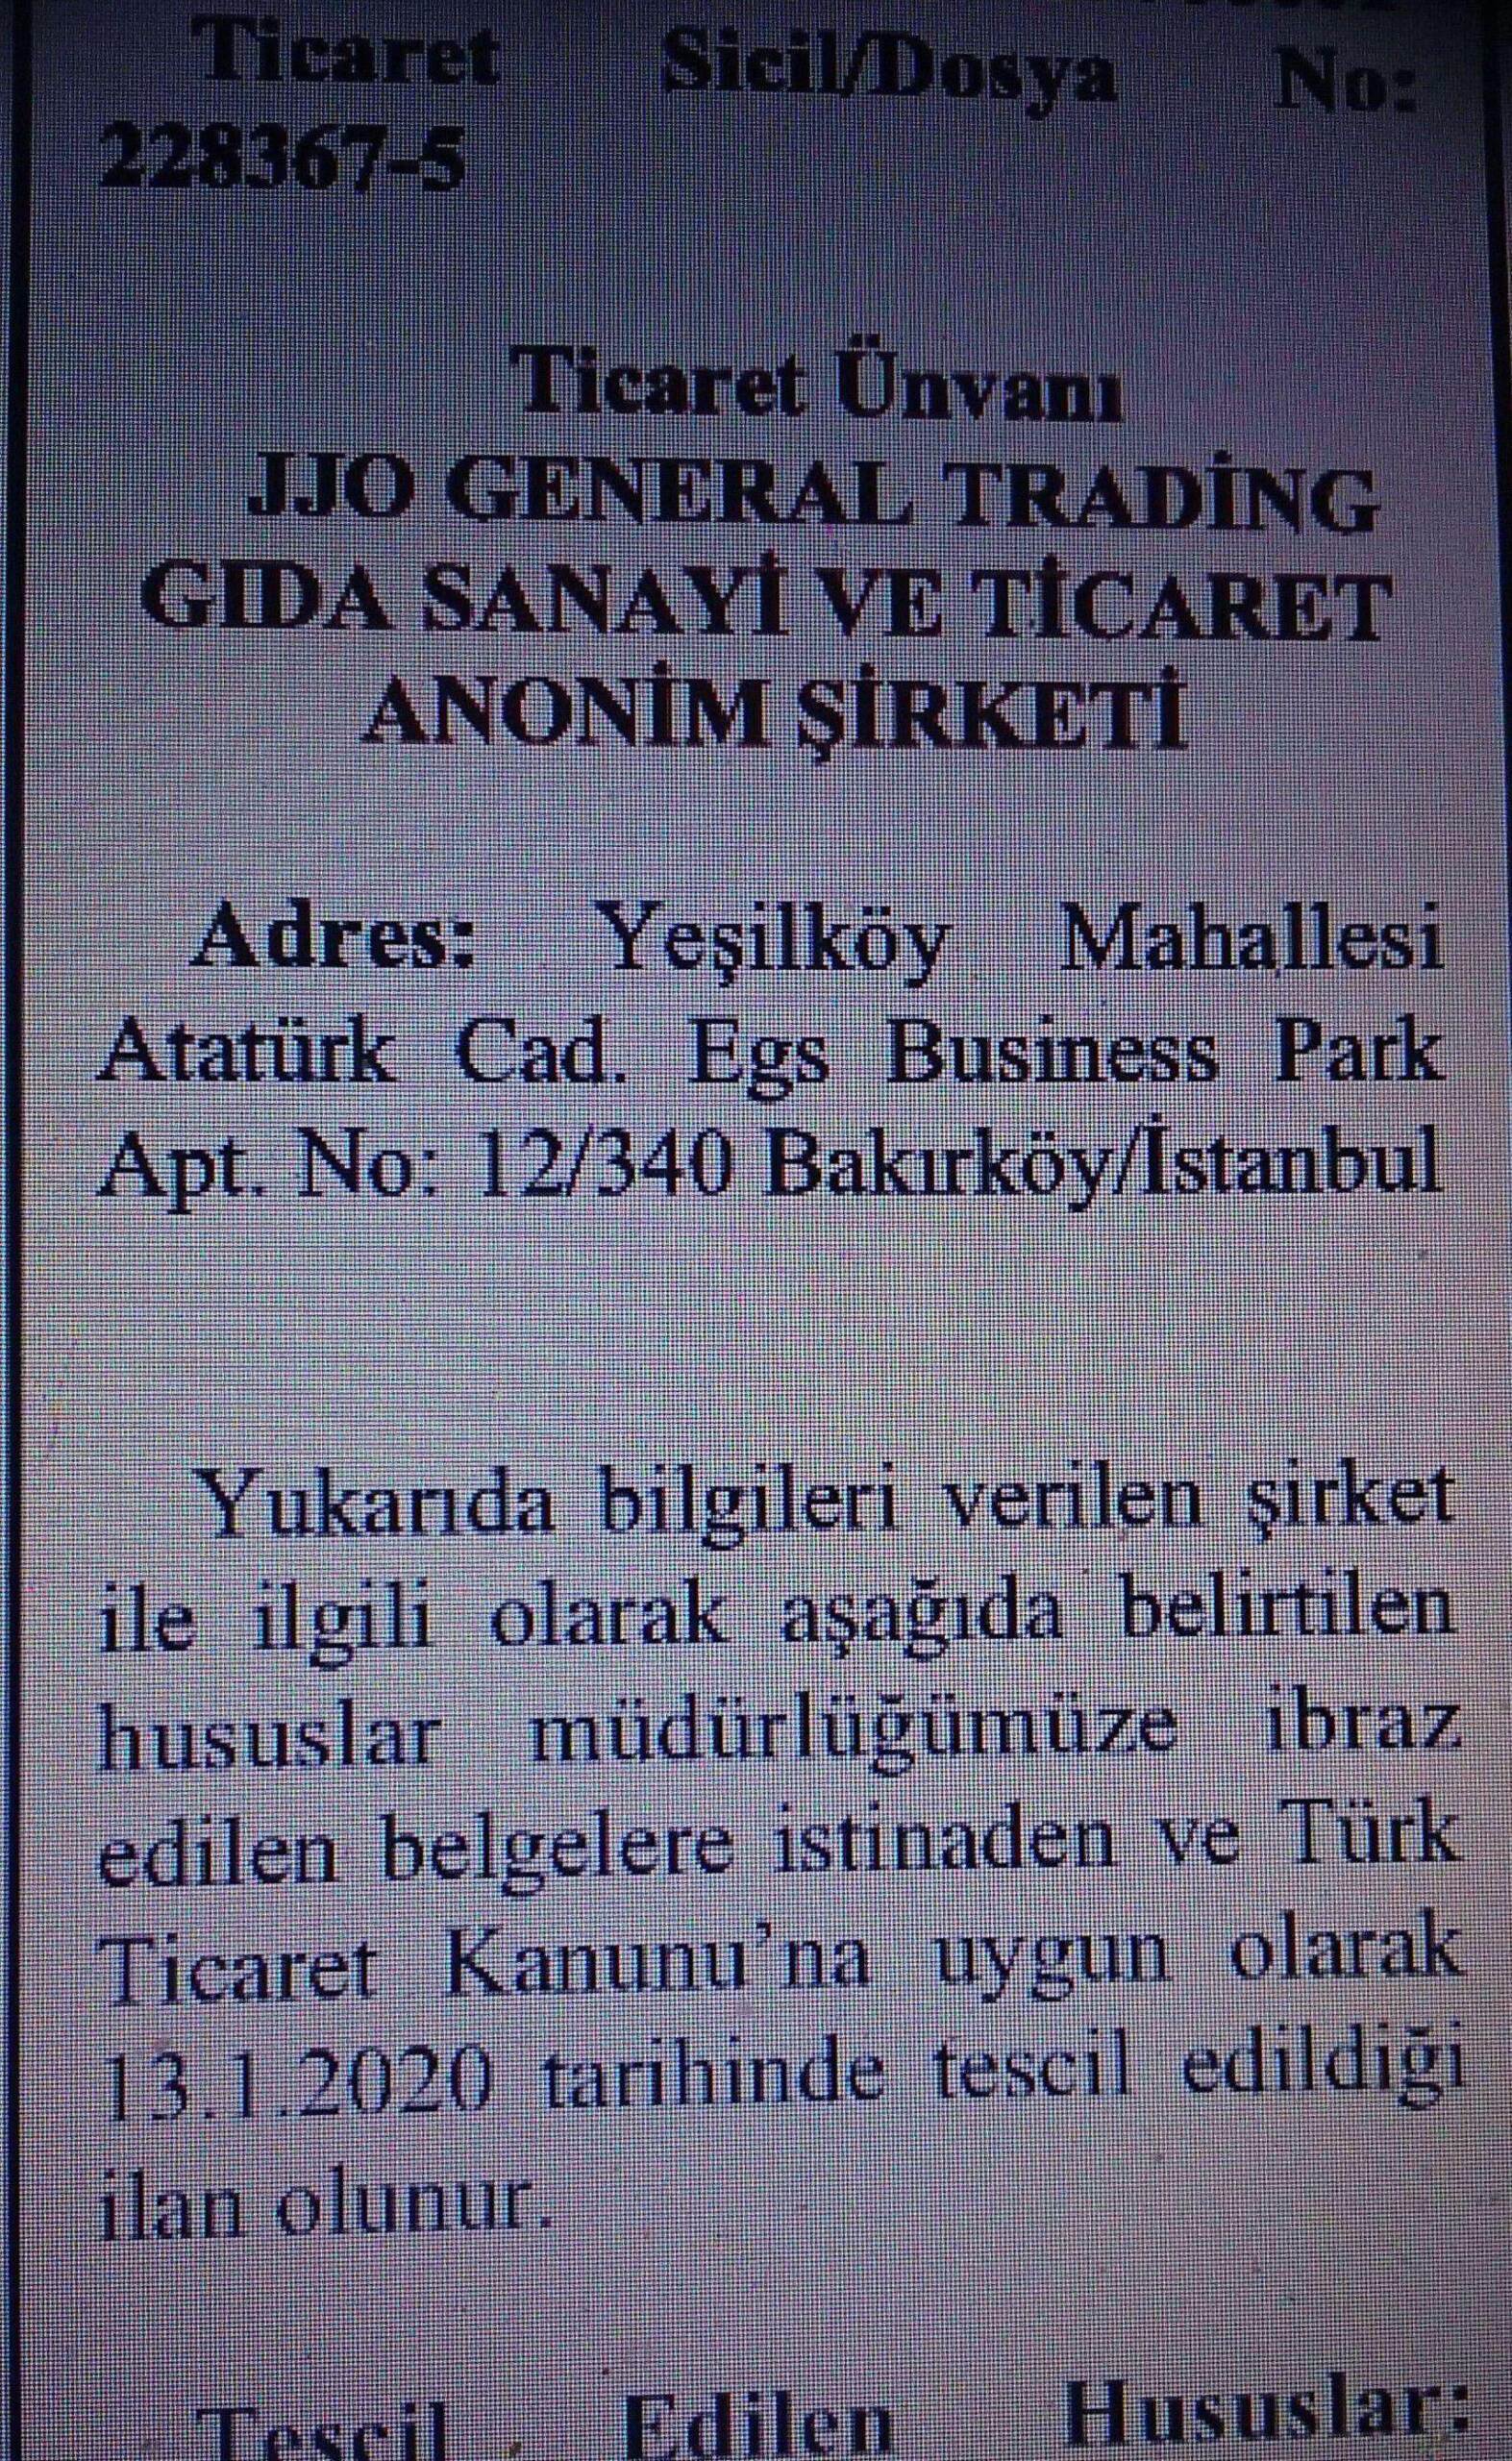 ifmat - Turkey-based JJO General Trading lists sanctioned terror financier as the sole board member1